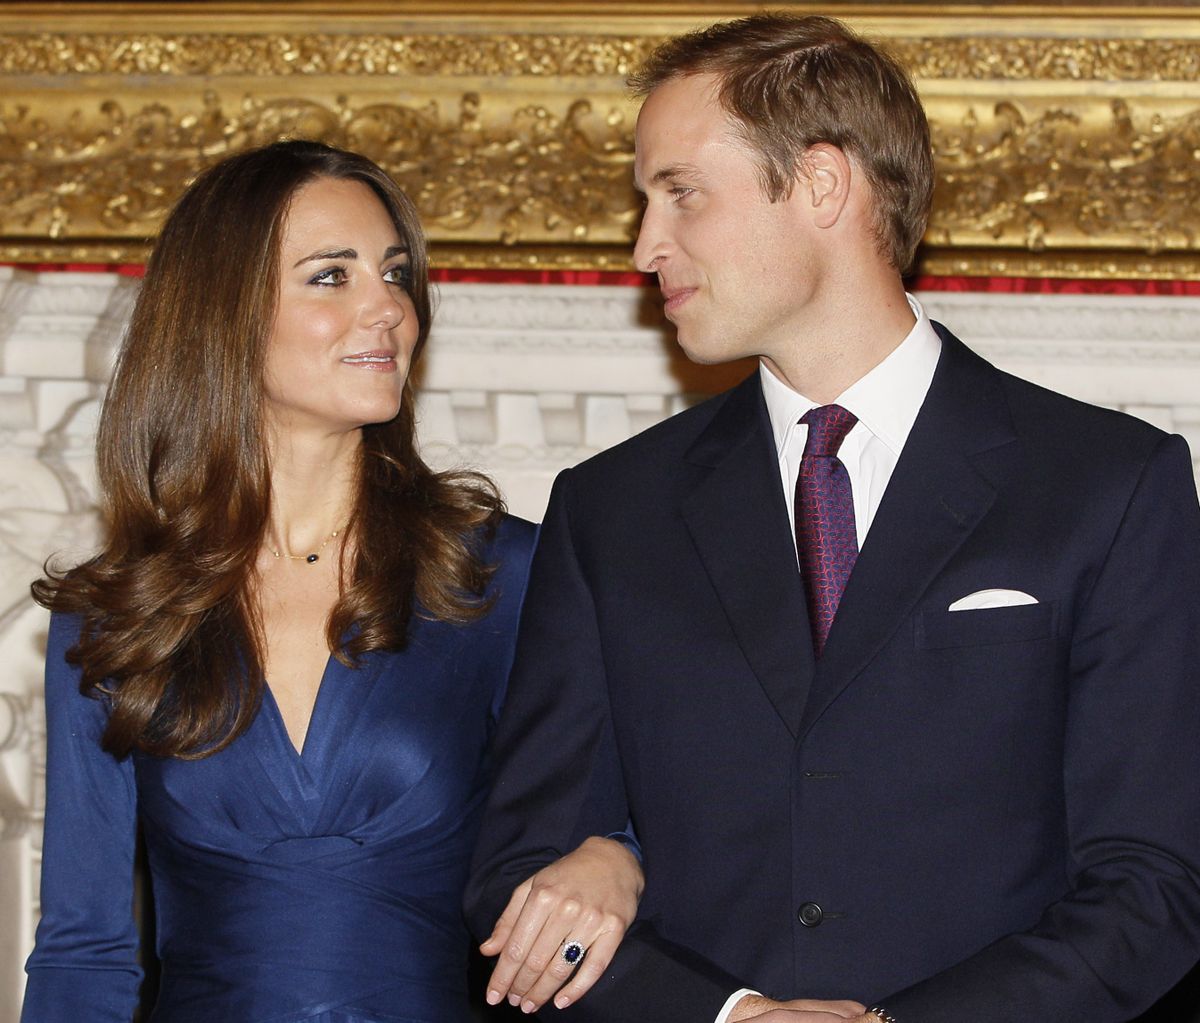 Lielbritānijas princis Viljams un viņa līgava Keita Midltone 2010. gada 16. novembrī oficiāli paziņo par saderināšanos. Pāris pozē medijiem Svētā Džeimsa pilī Londonā. 